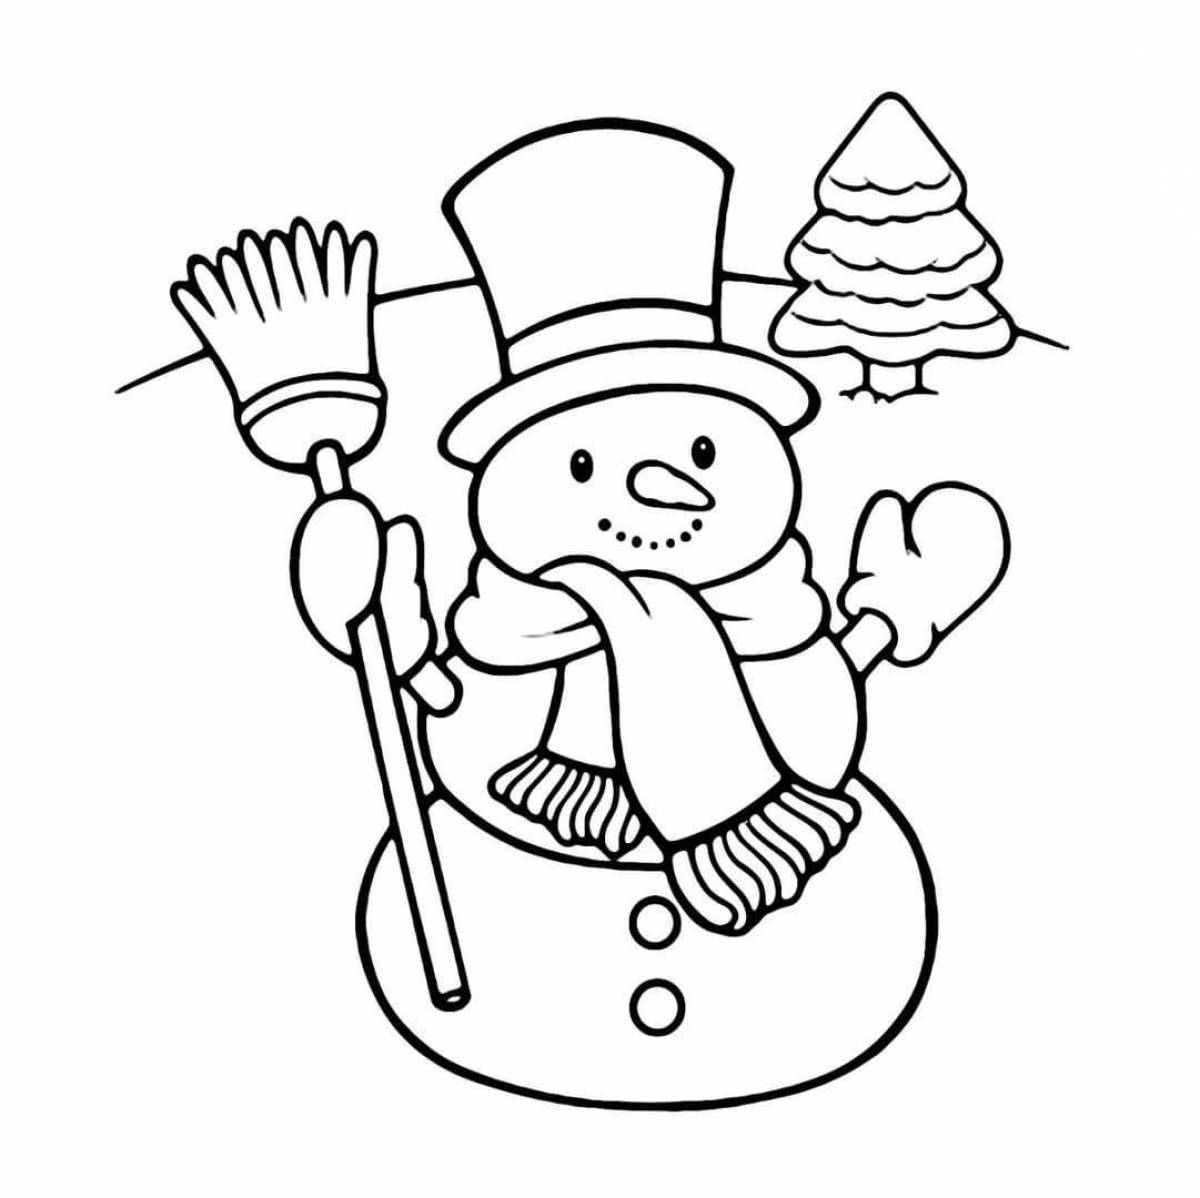 Симпатичная раскраска снеговик для детей